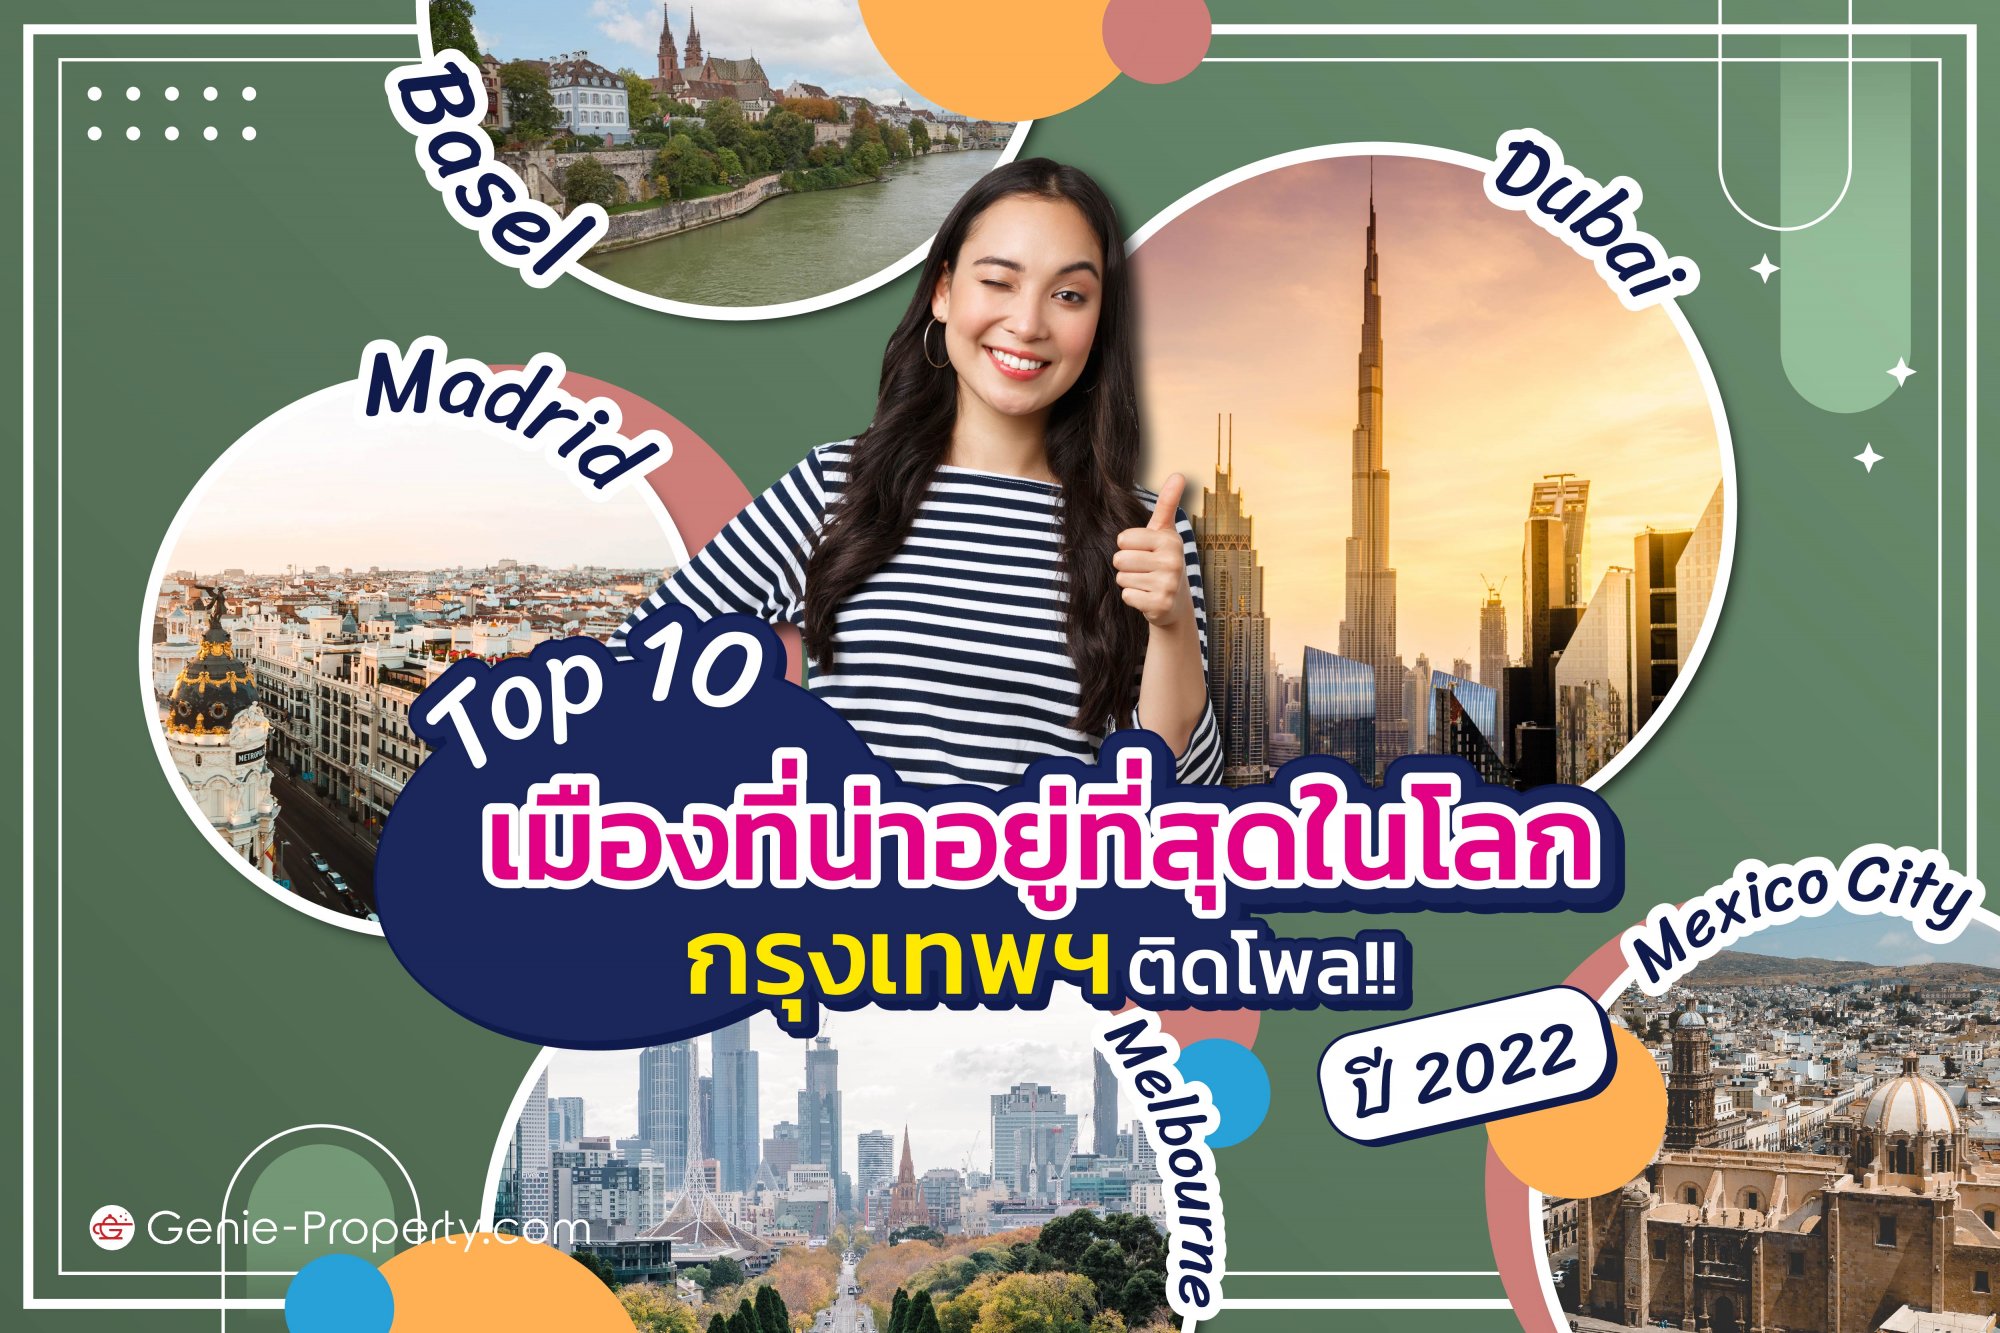 image for Top 10 เมืองที่น่าอยู่ที่สุดในโลก ปี 2022 กรุงเทพฯ ติดโพล!!